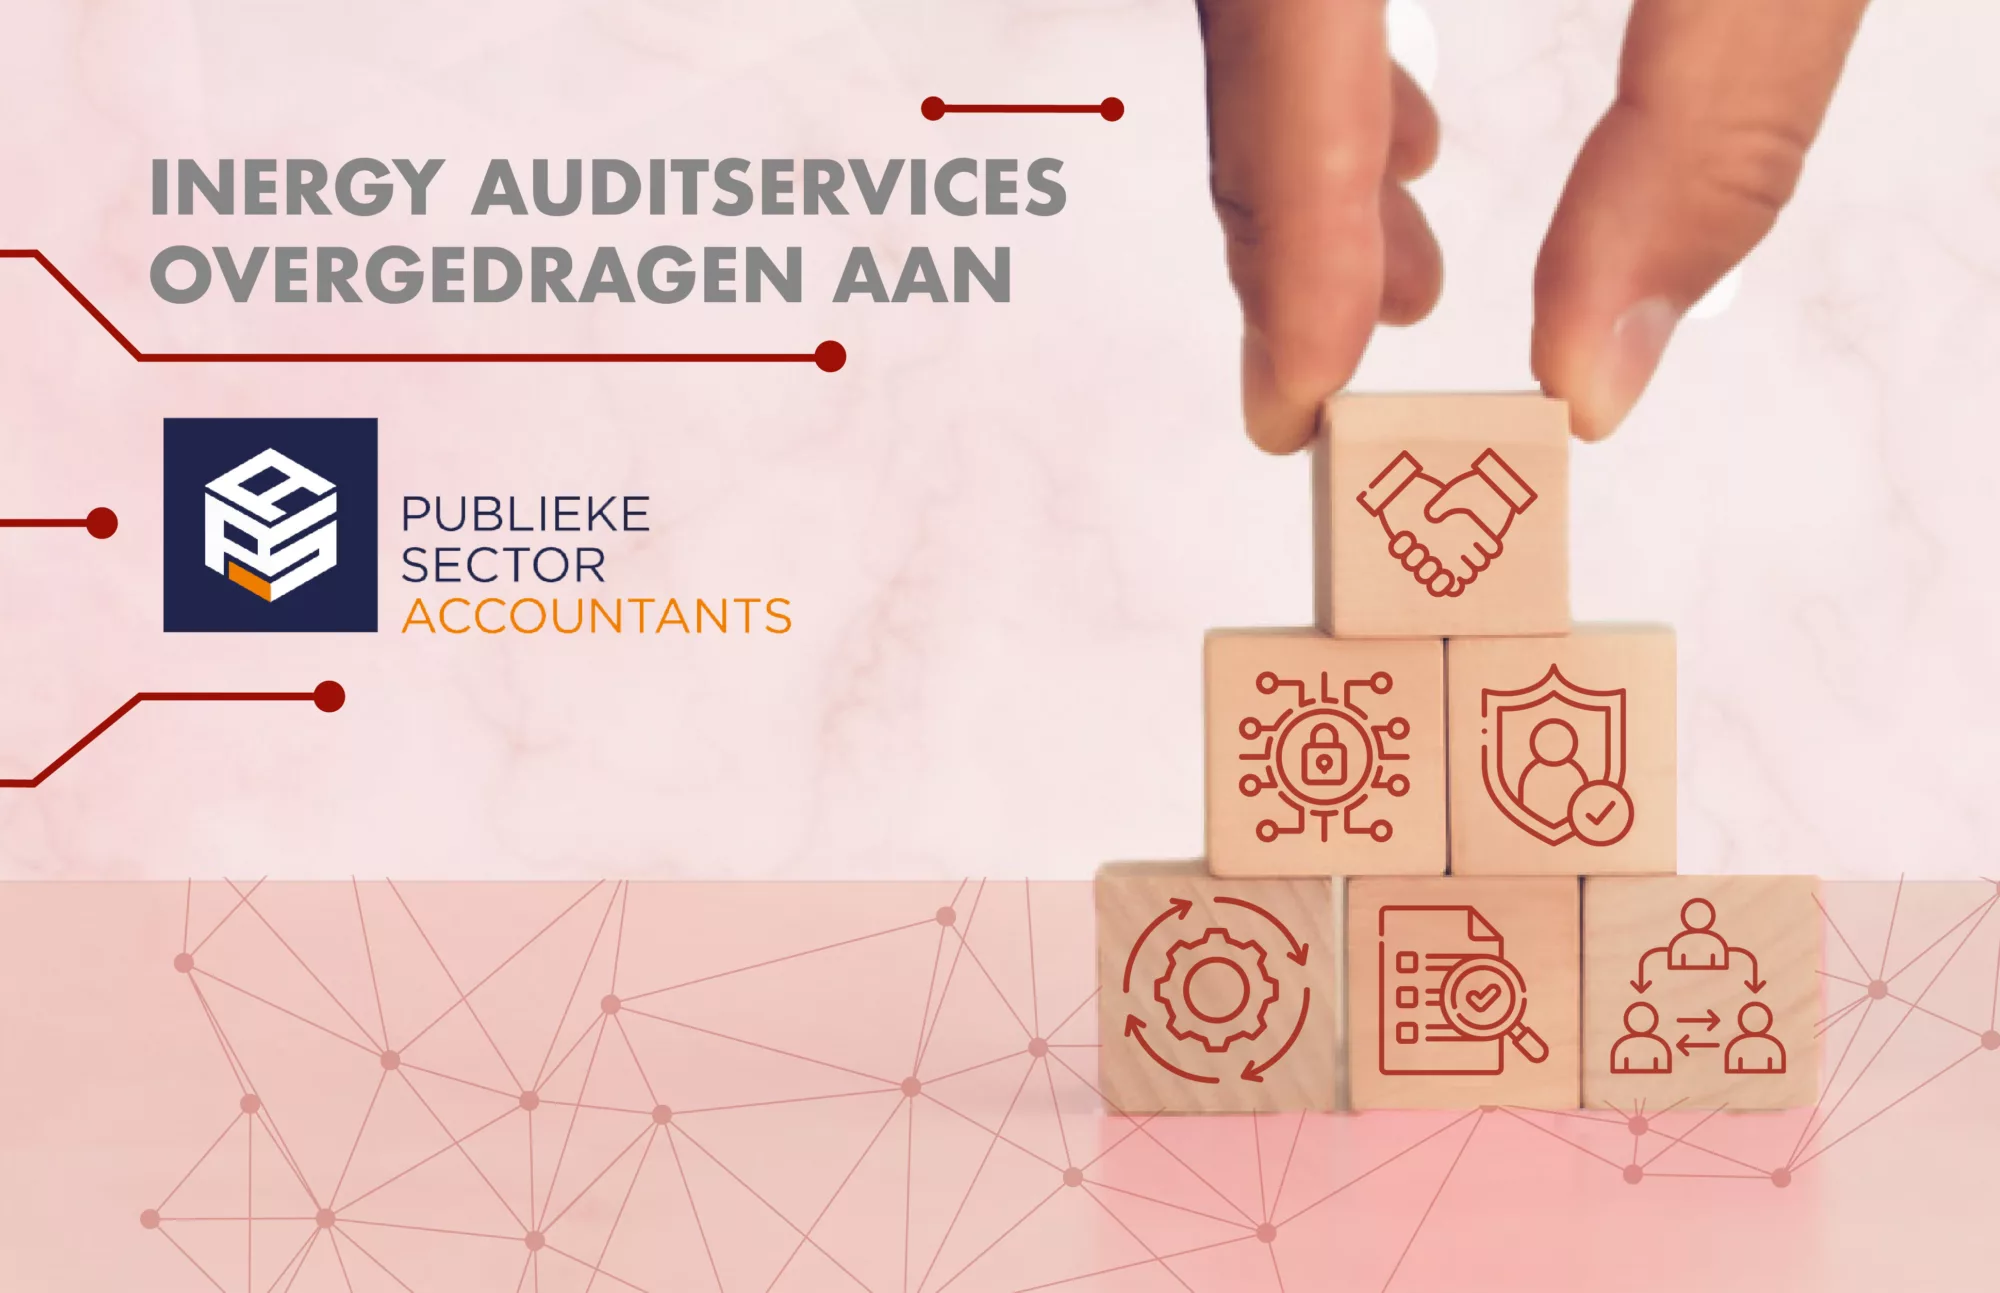 Inergy Auditservices is overgedragen aan Publieke Sector Accountants